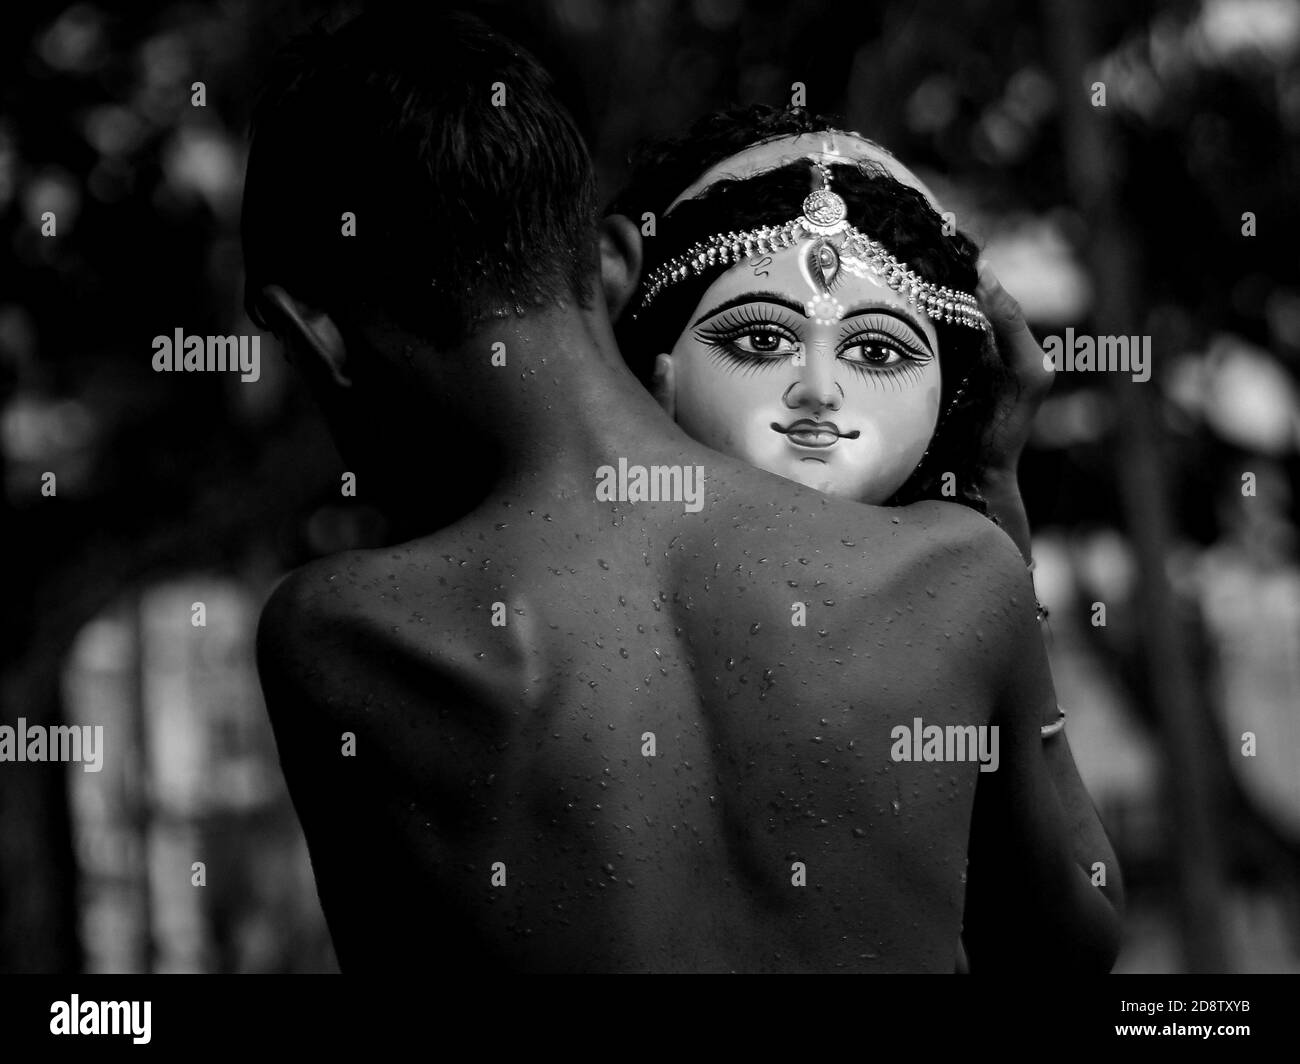 Ein Kind hält den Kopf eines Idols der Göttin Durga während einer Immersionszeremonie für Dashami, dem letzten Tag des Durga Puja Festivals. Das Festival ist das größte religiöse Ereignis für bengalische Hindus. Hindus glauben, dass die Göttin Durga Macht und den Triumph des Guten über das Böse symbolisiert. Agartala, Tripura, Indien. Stockfoto